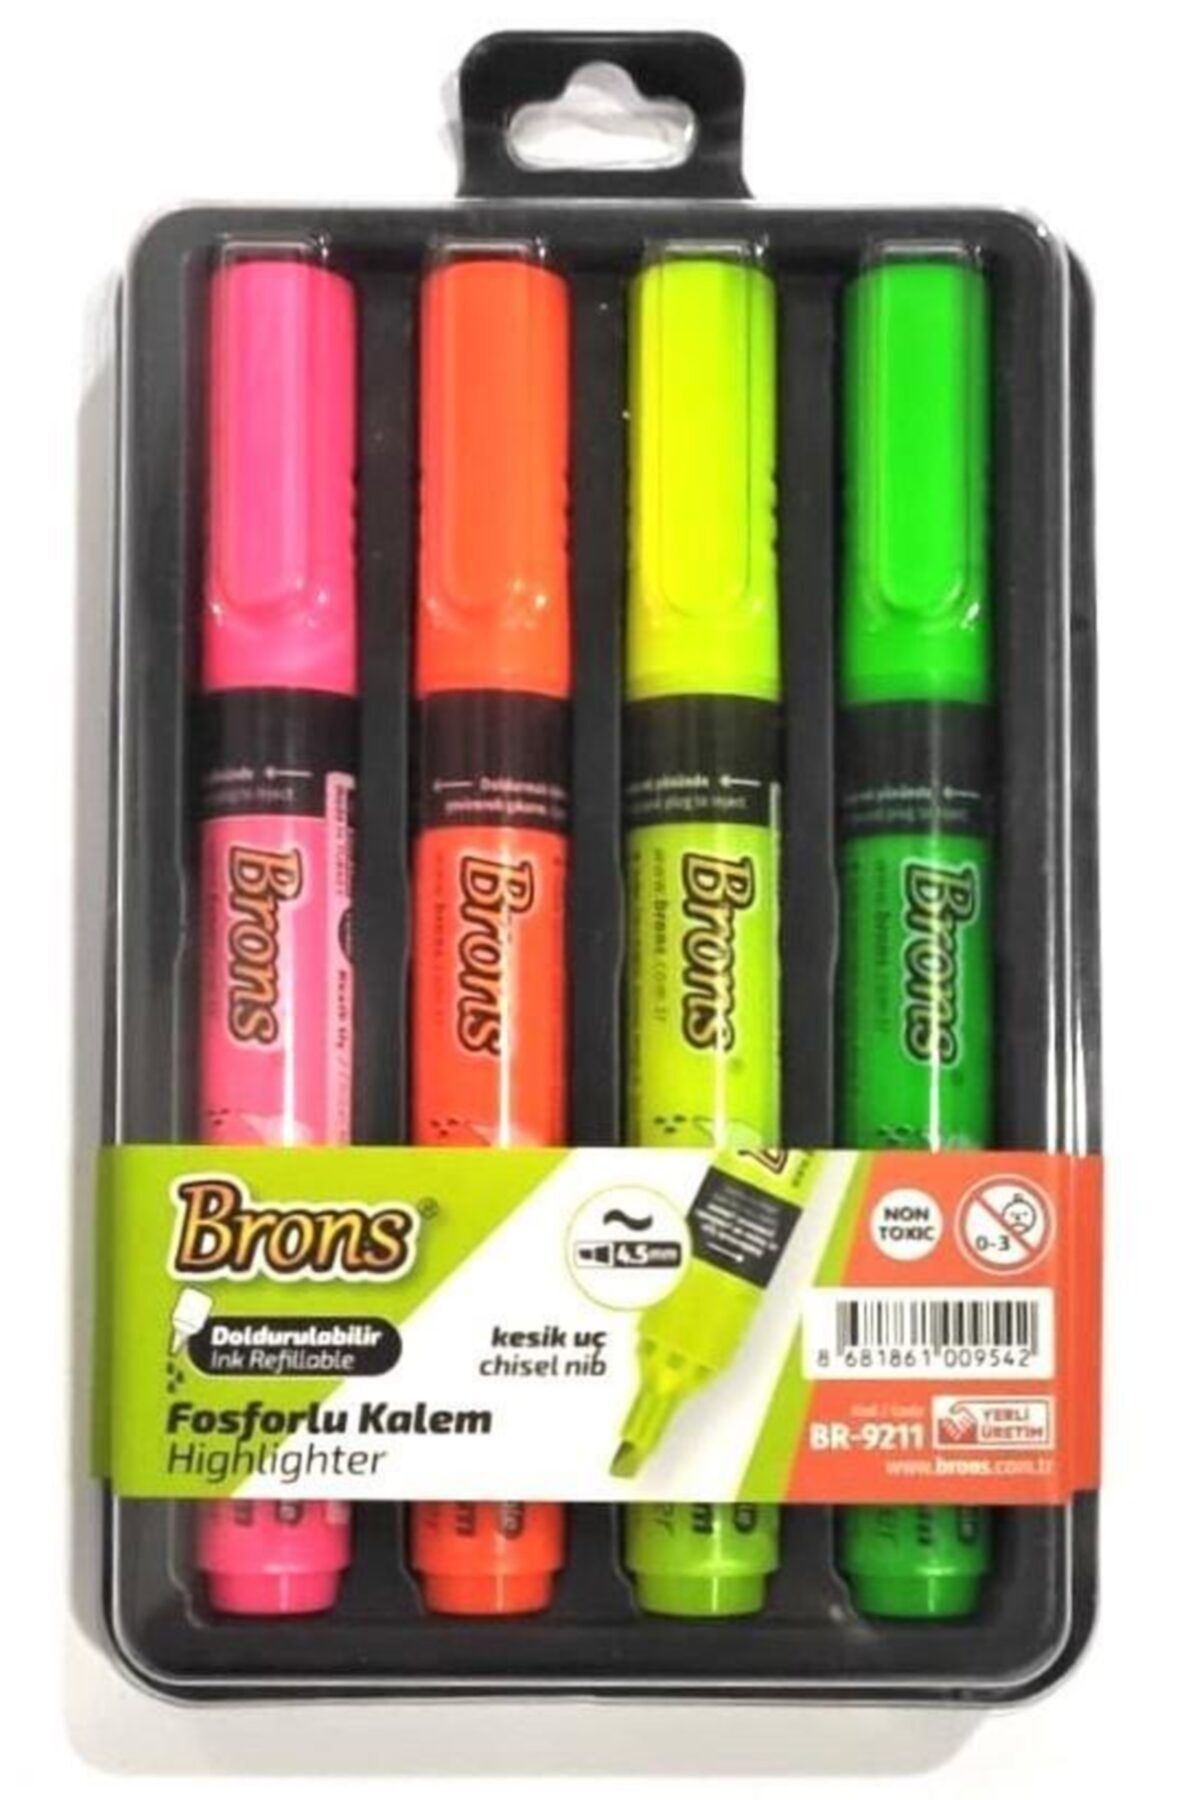 Brons Doldurulabilir Fosforlu Kalem 4 Renk Set